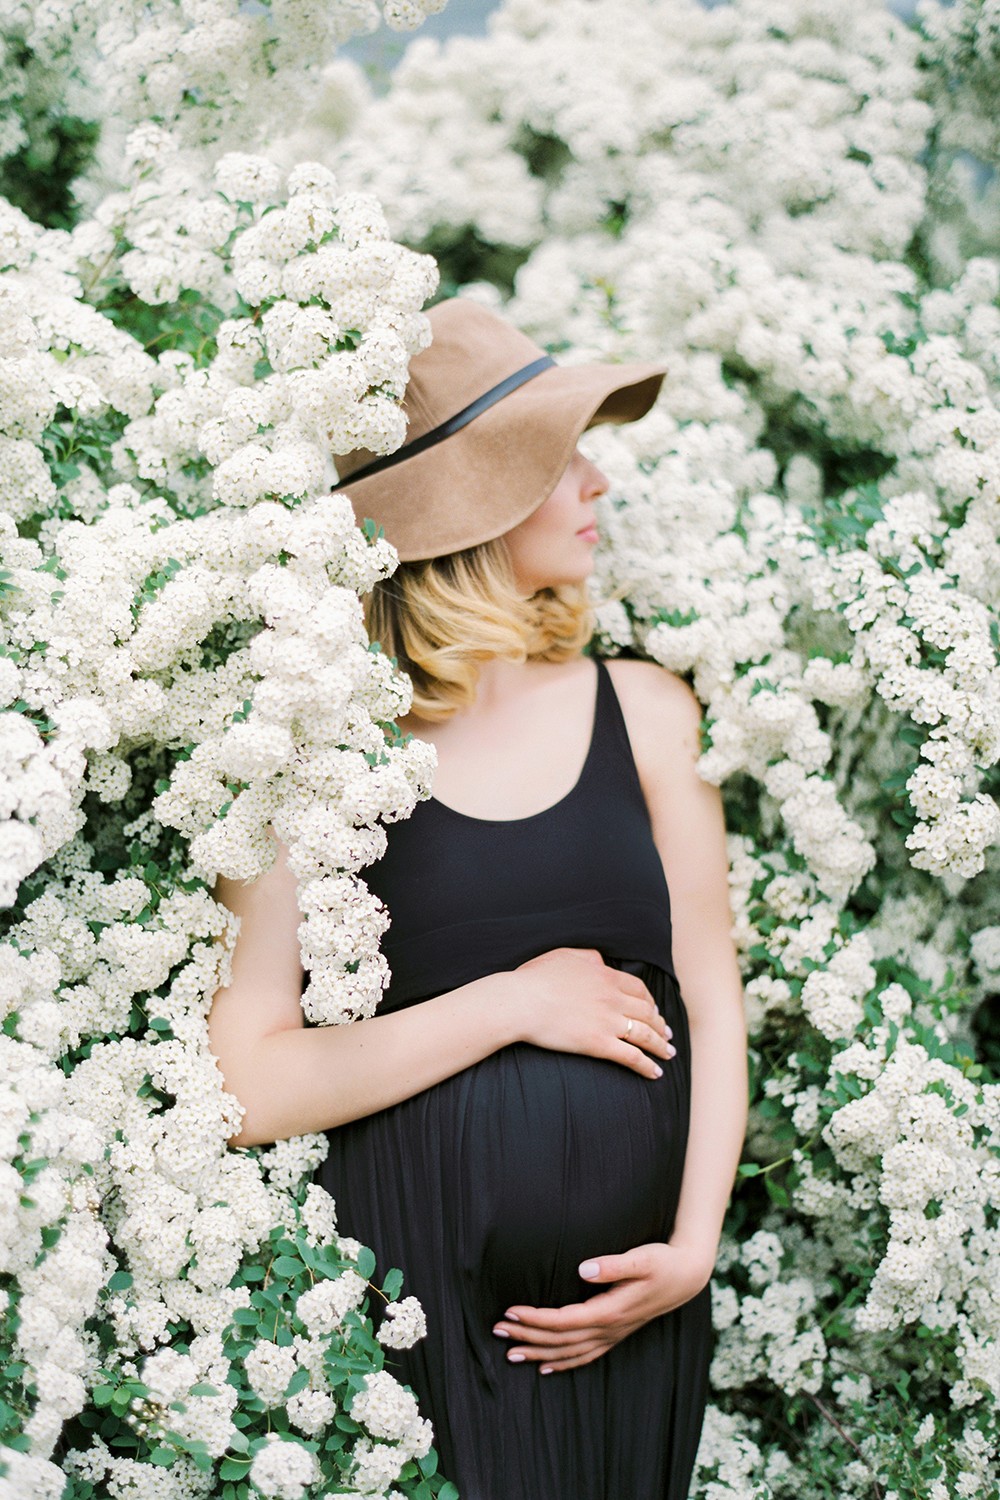 Alina Frendiy pregnancy photoshoot